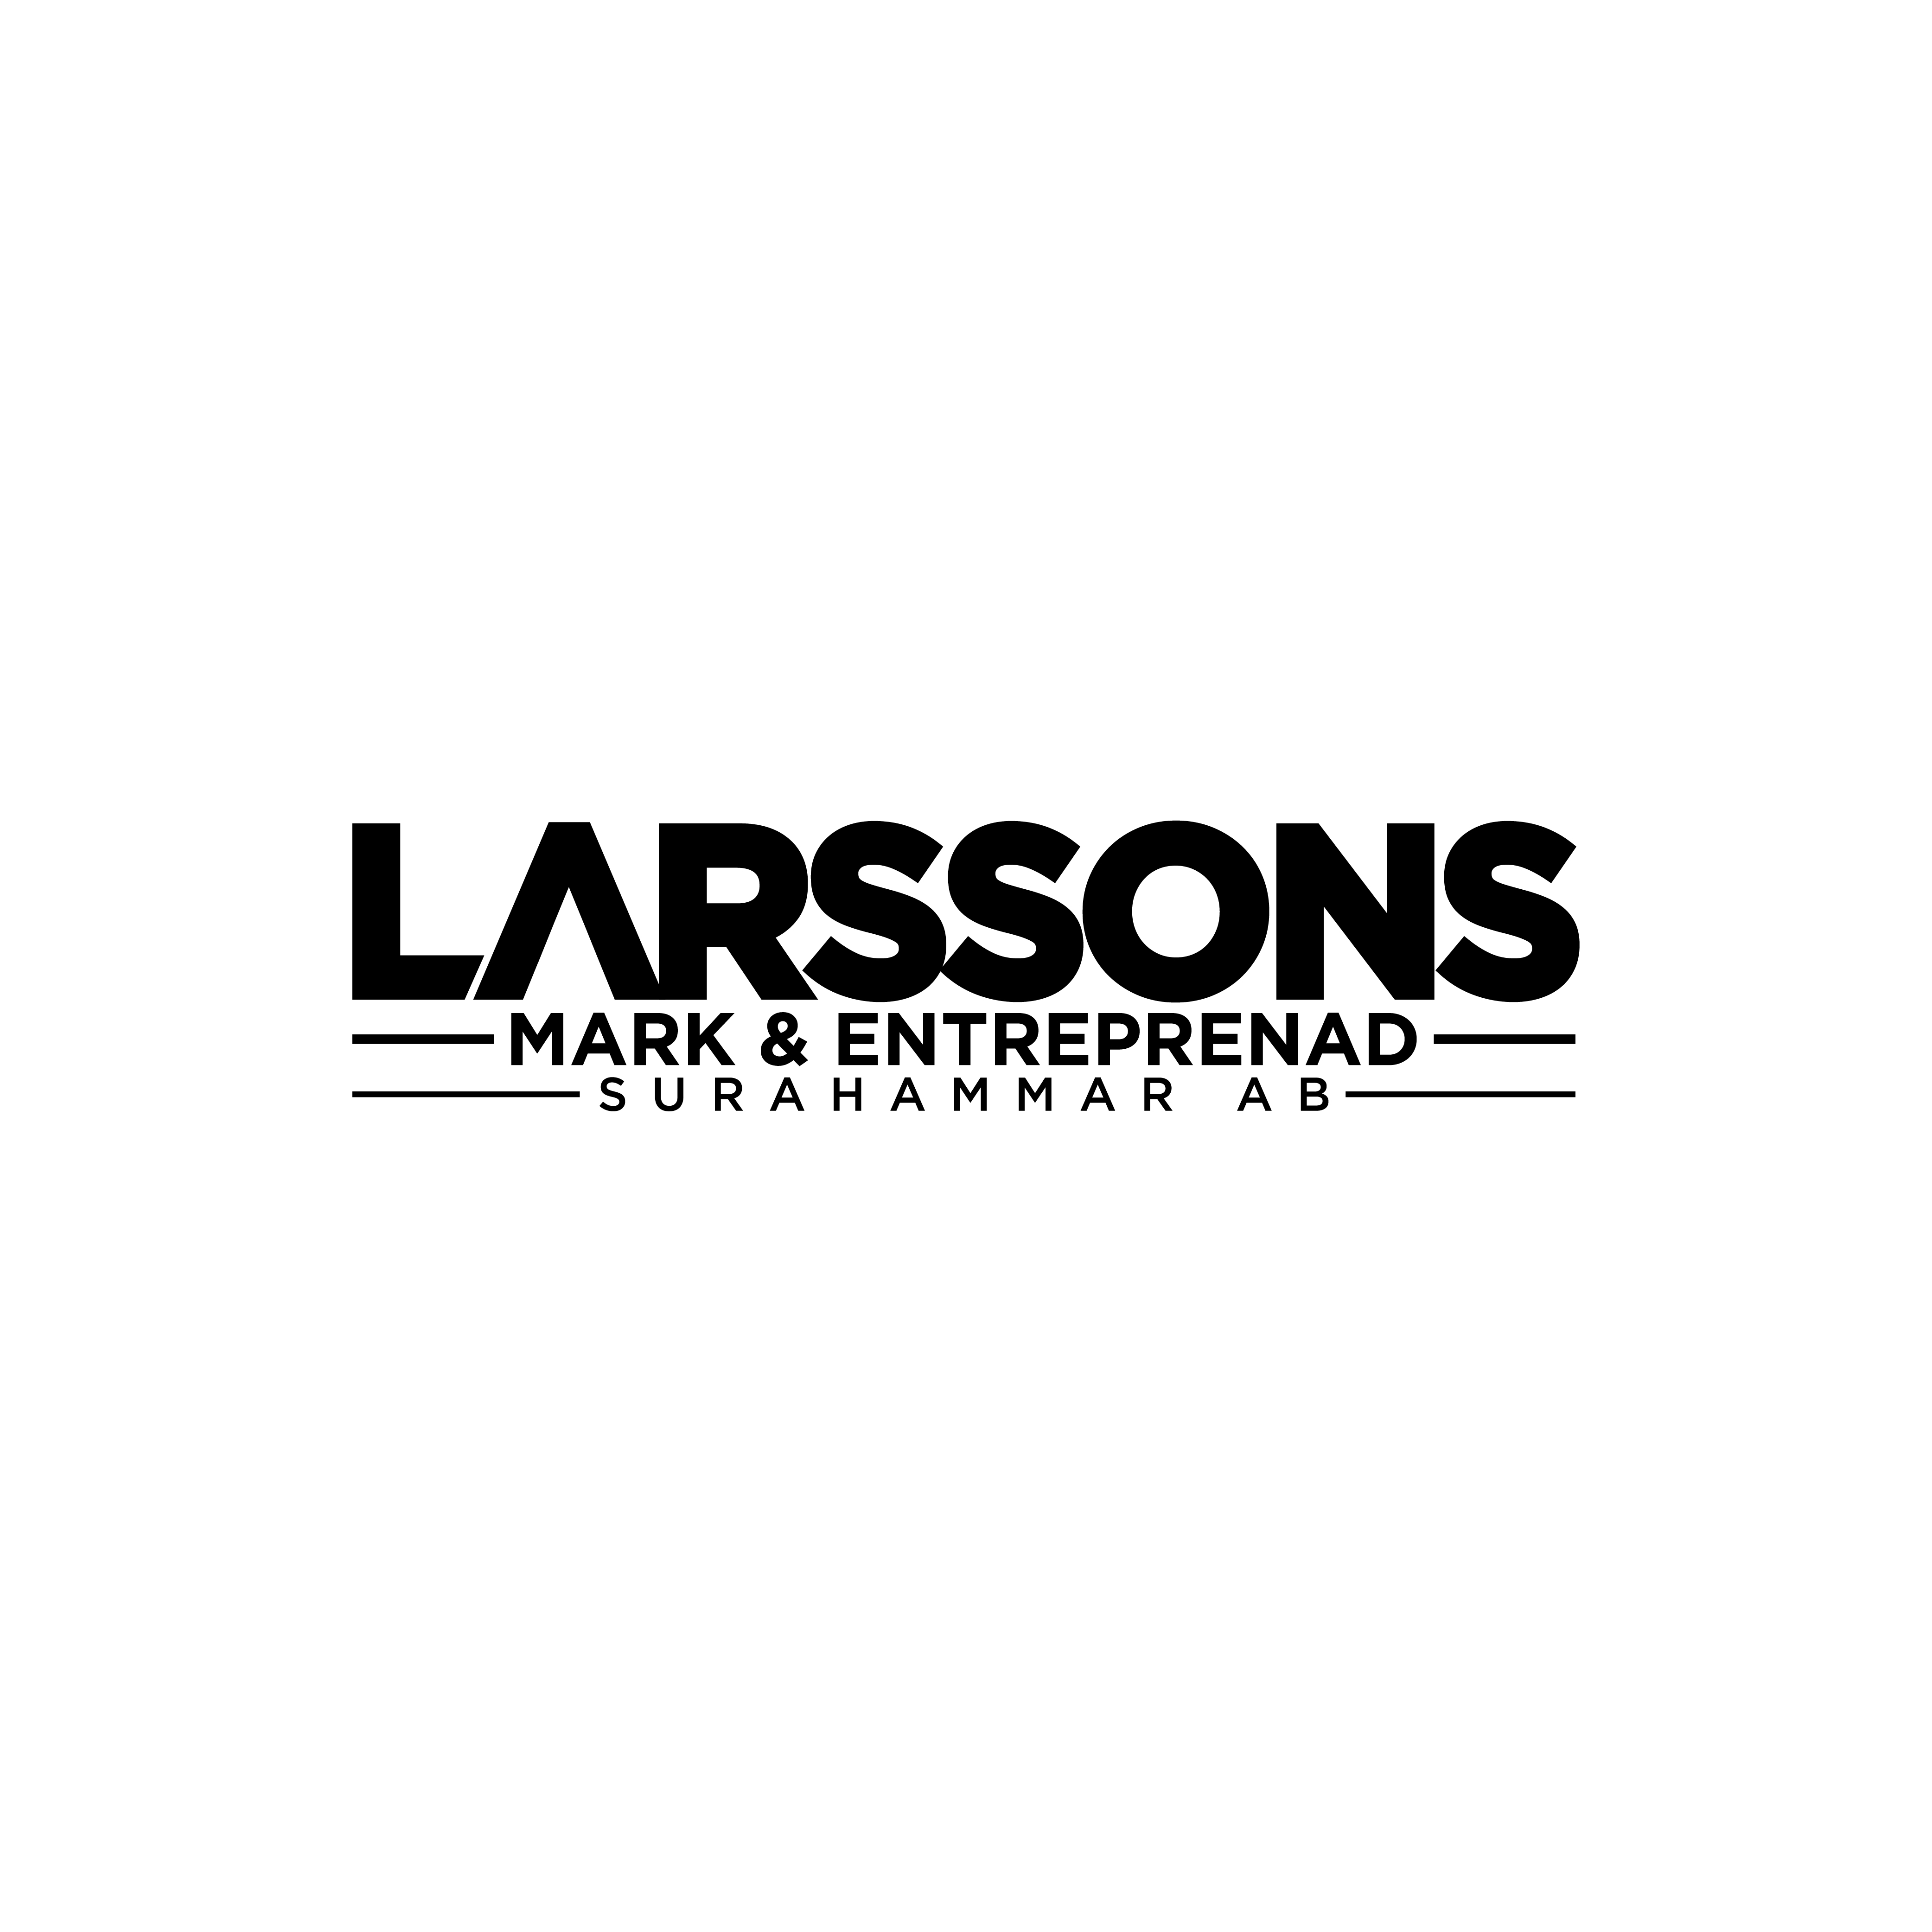 Larssons Mark & Entreprenad Surahammar AB